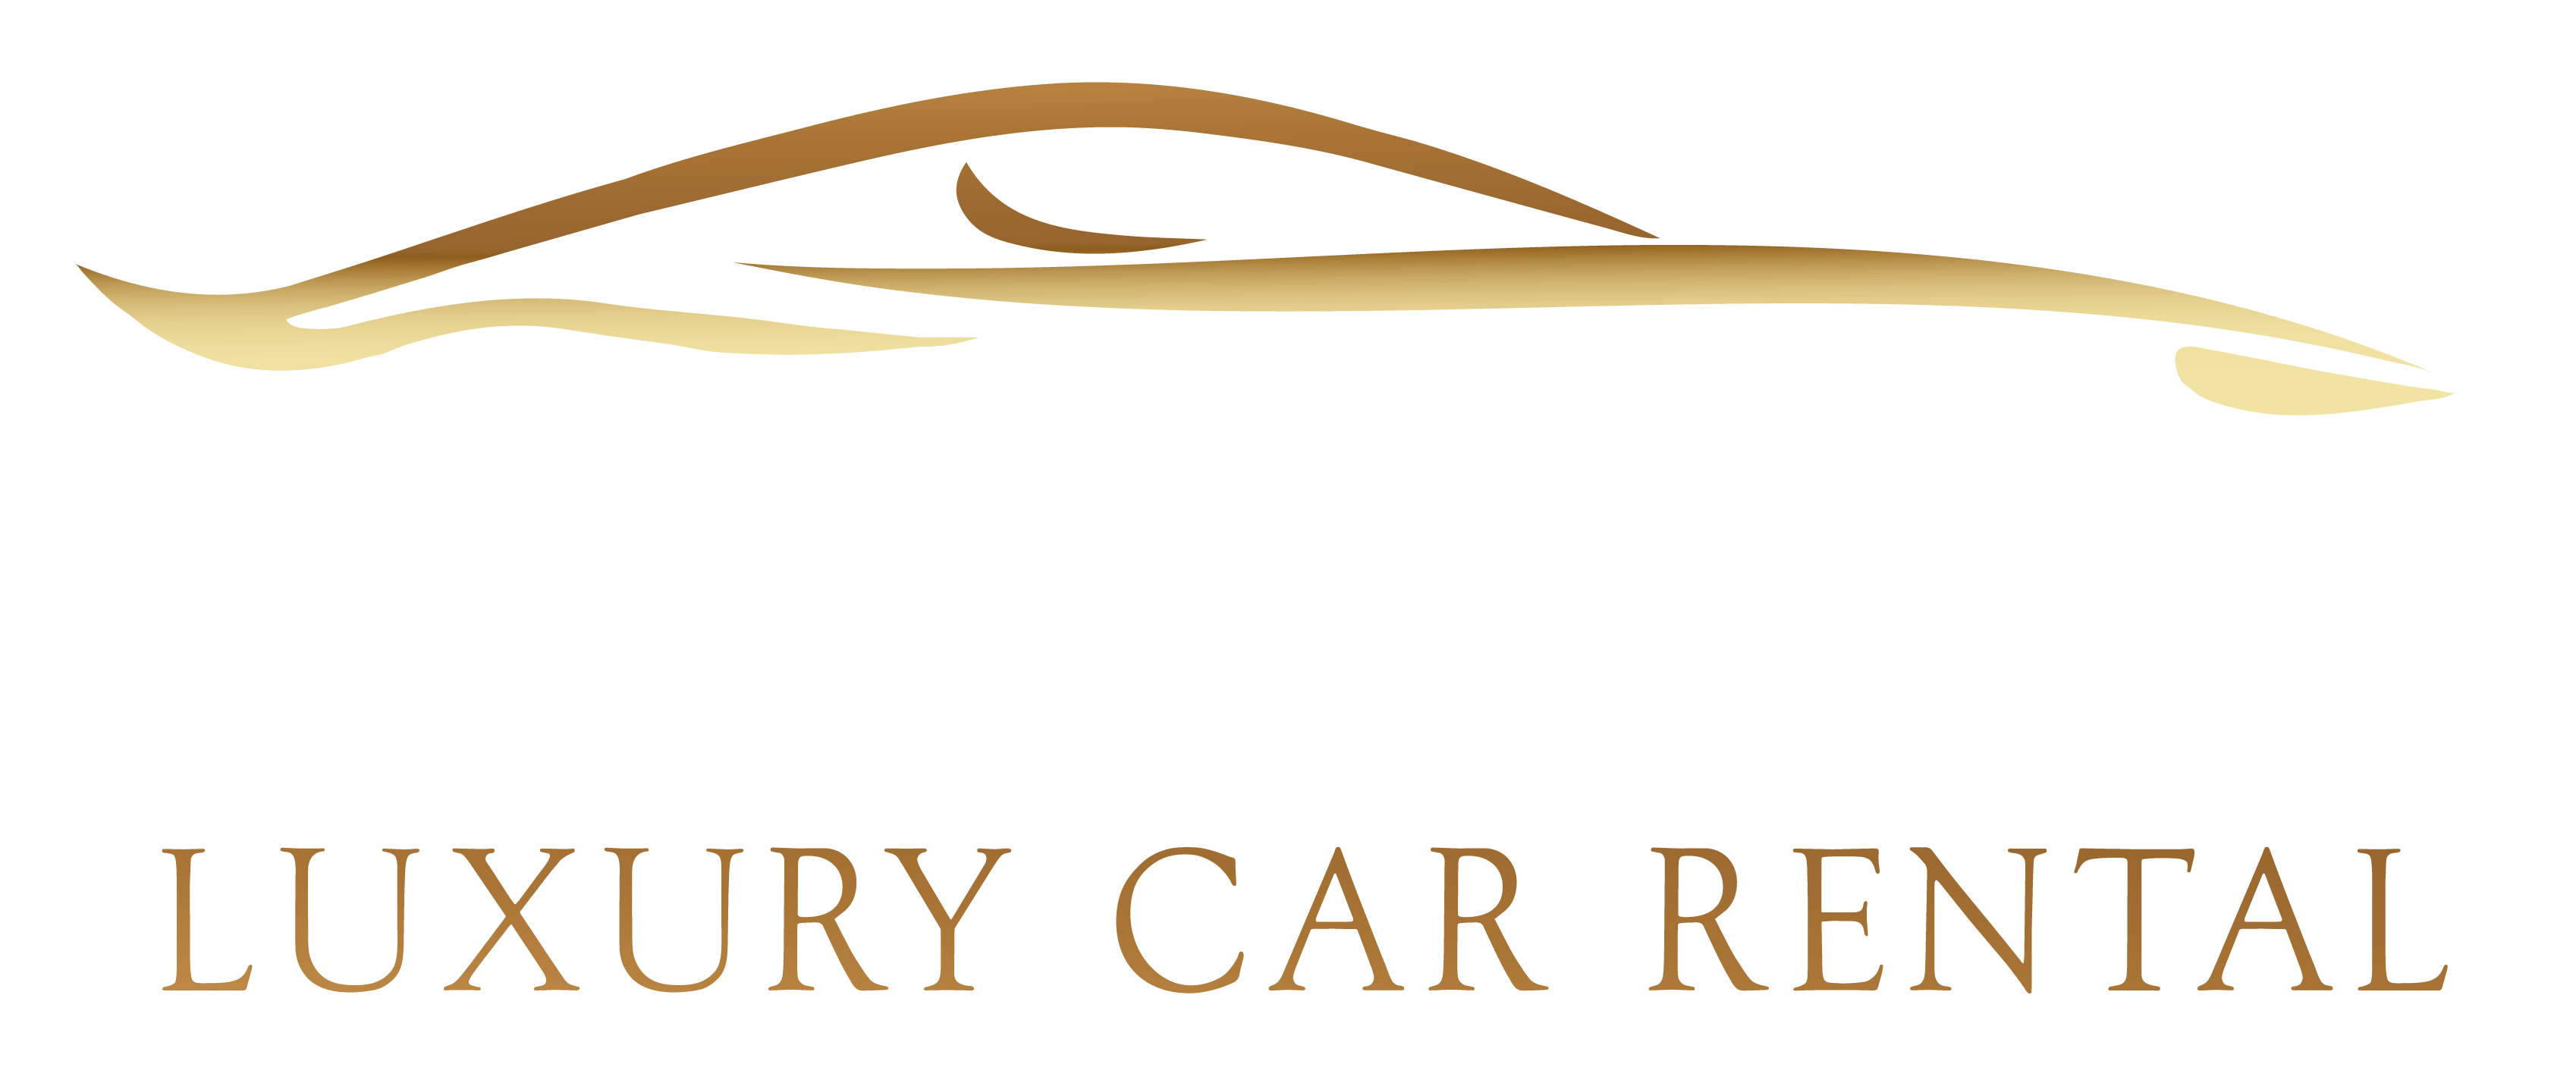 Carsax Luxury